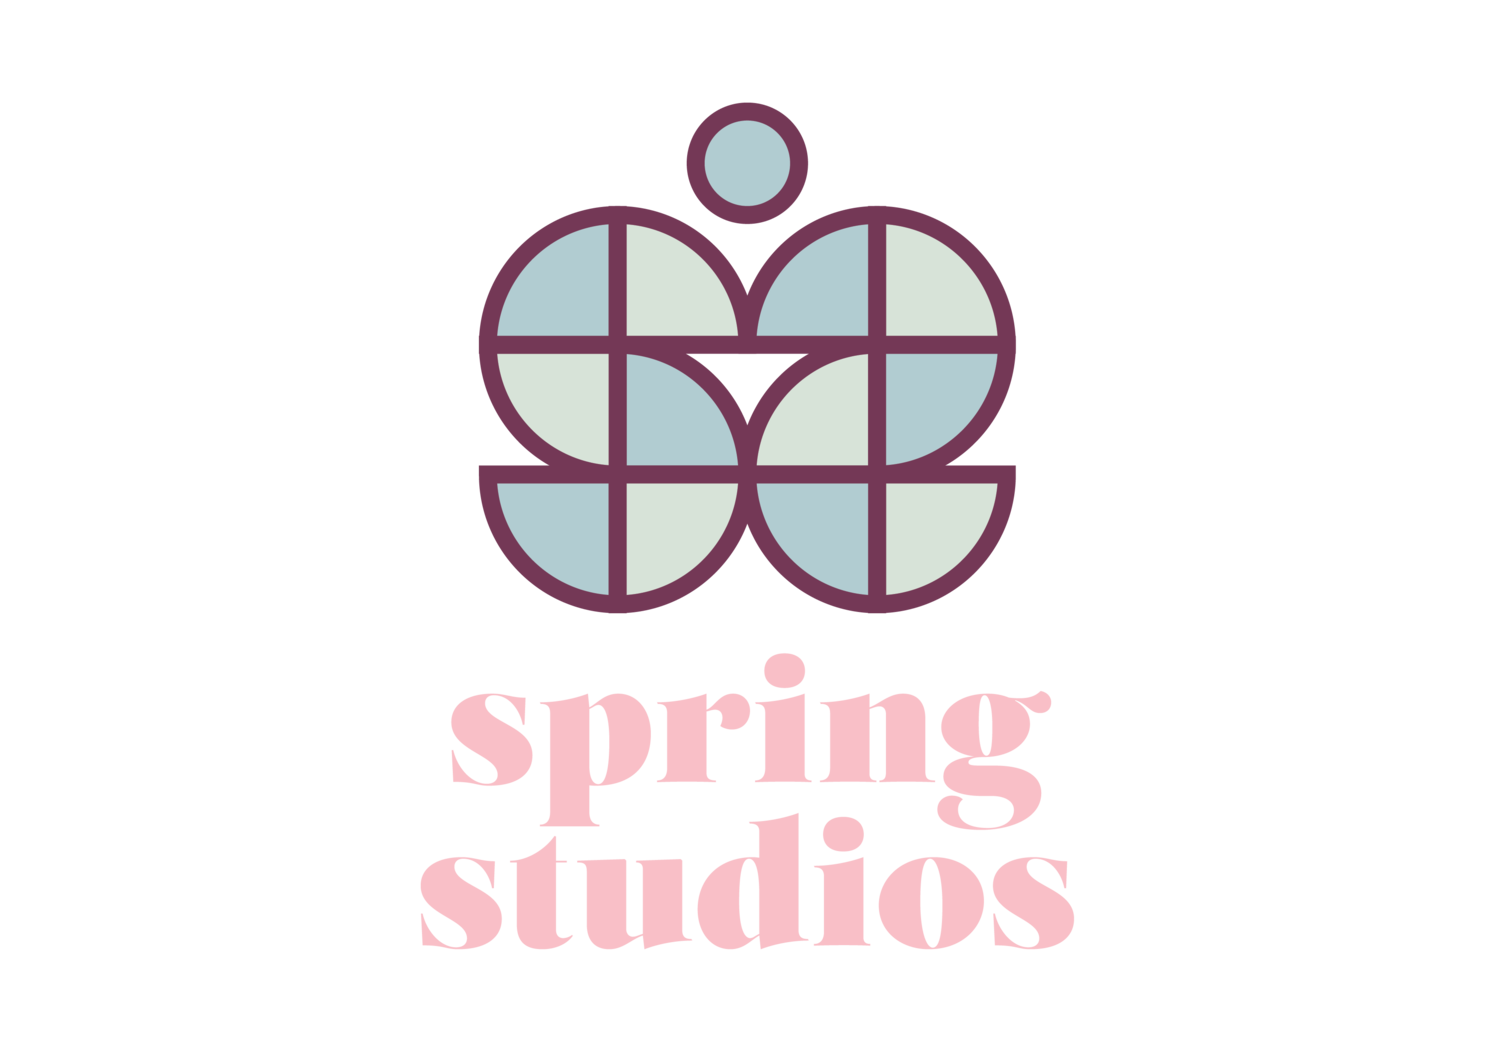 Spring Studios Philippines